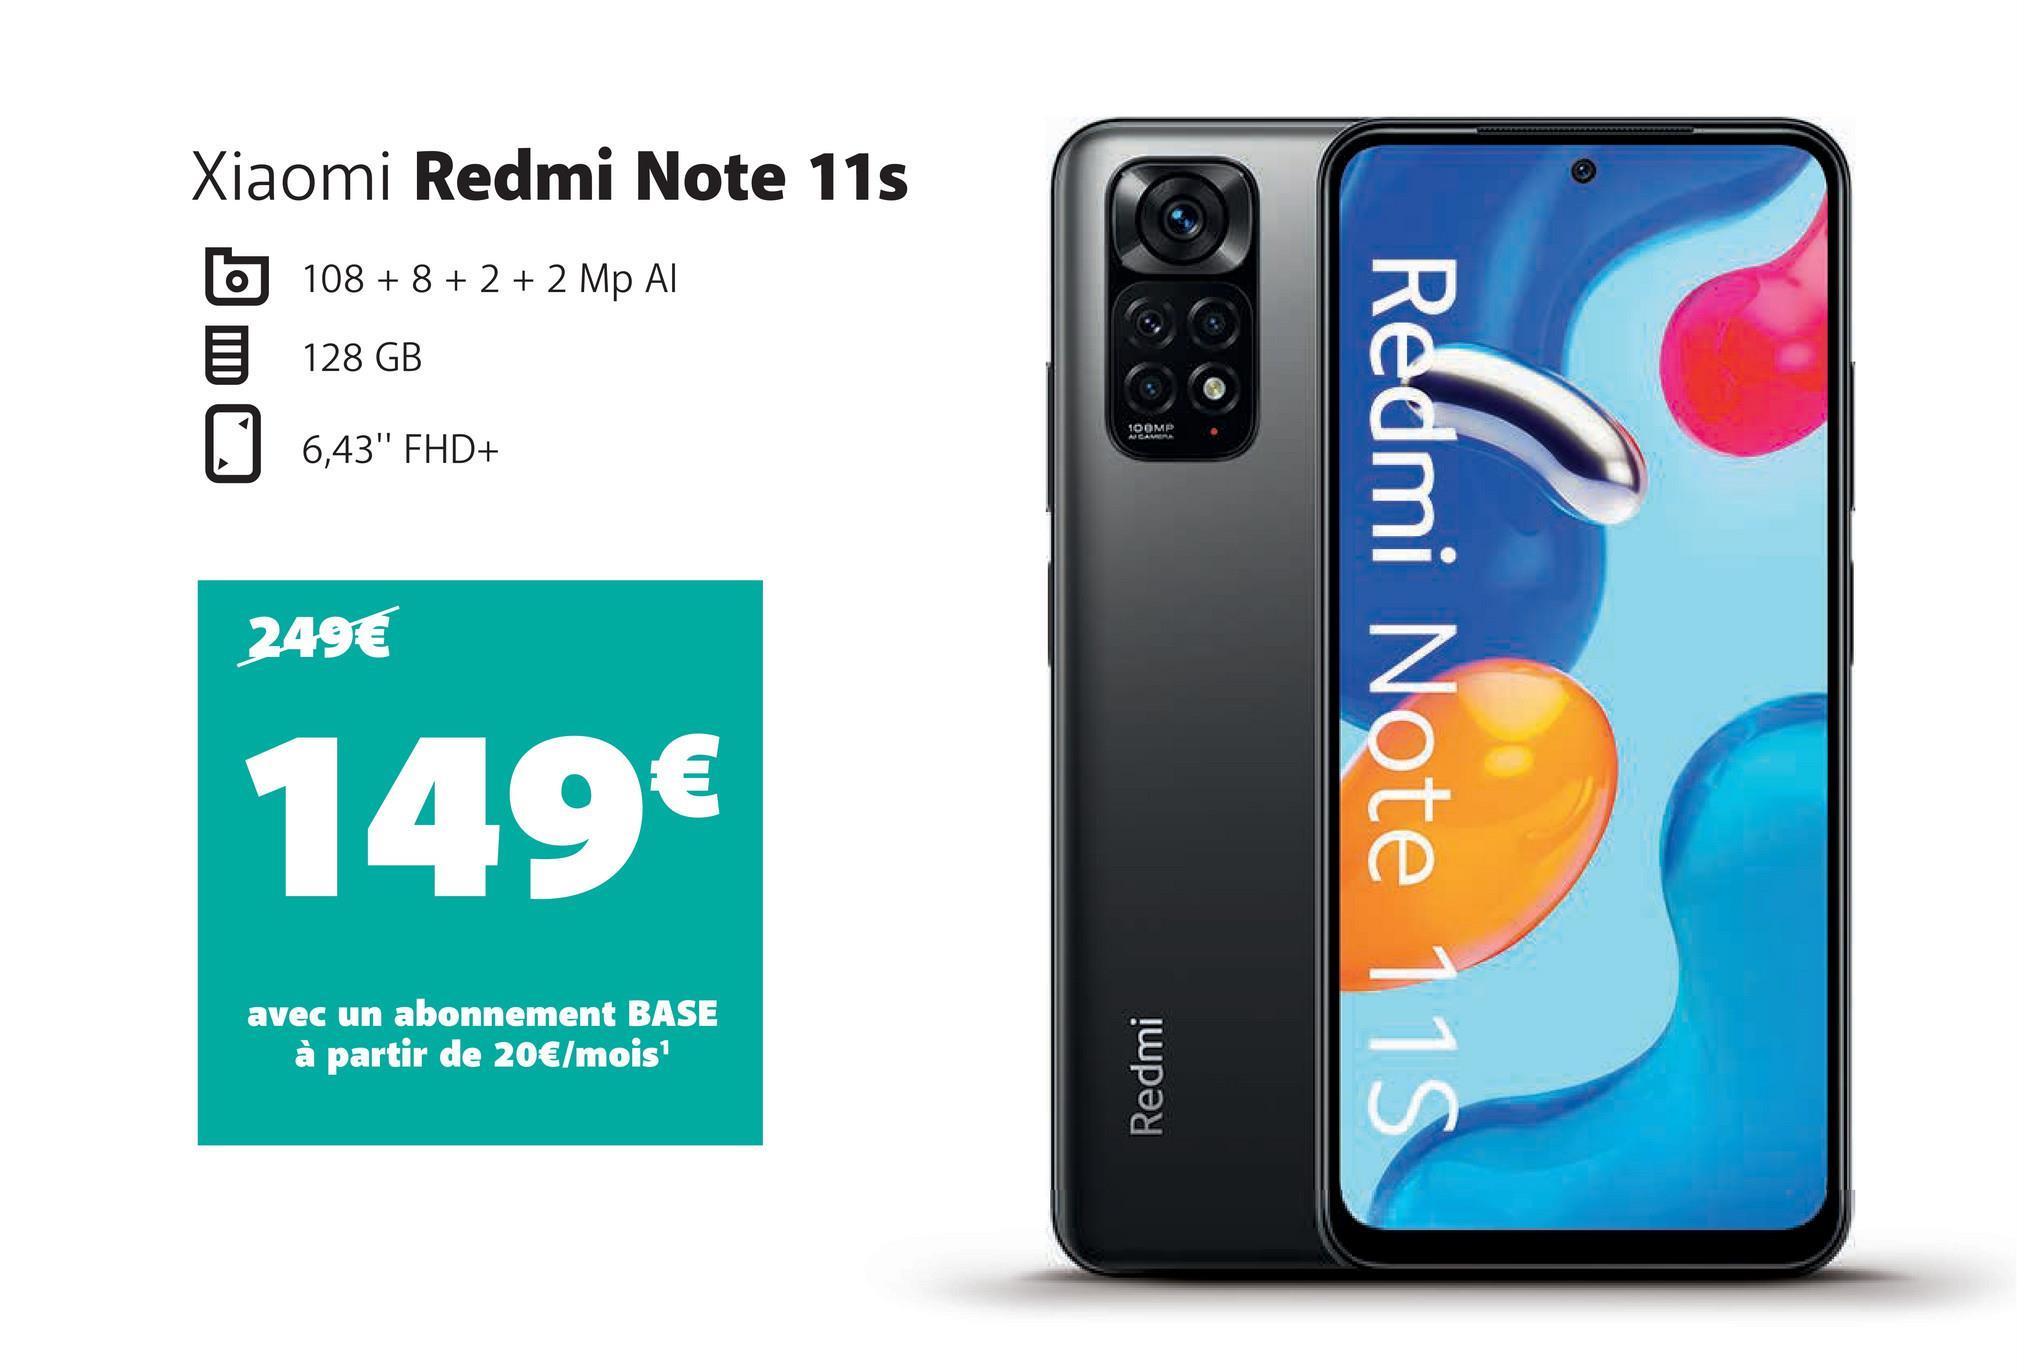 Xiaomi Redmi Note 11s
108 + 8 + 2 + 2 Mp Al
128 GB
6,43" FHD+
249€
149€
avec un abonnement BASE
à partir de 20€/mois¹
100MP
Redmi
Redmi Note 11S